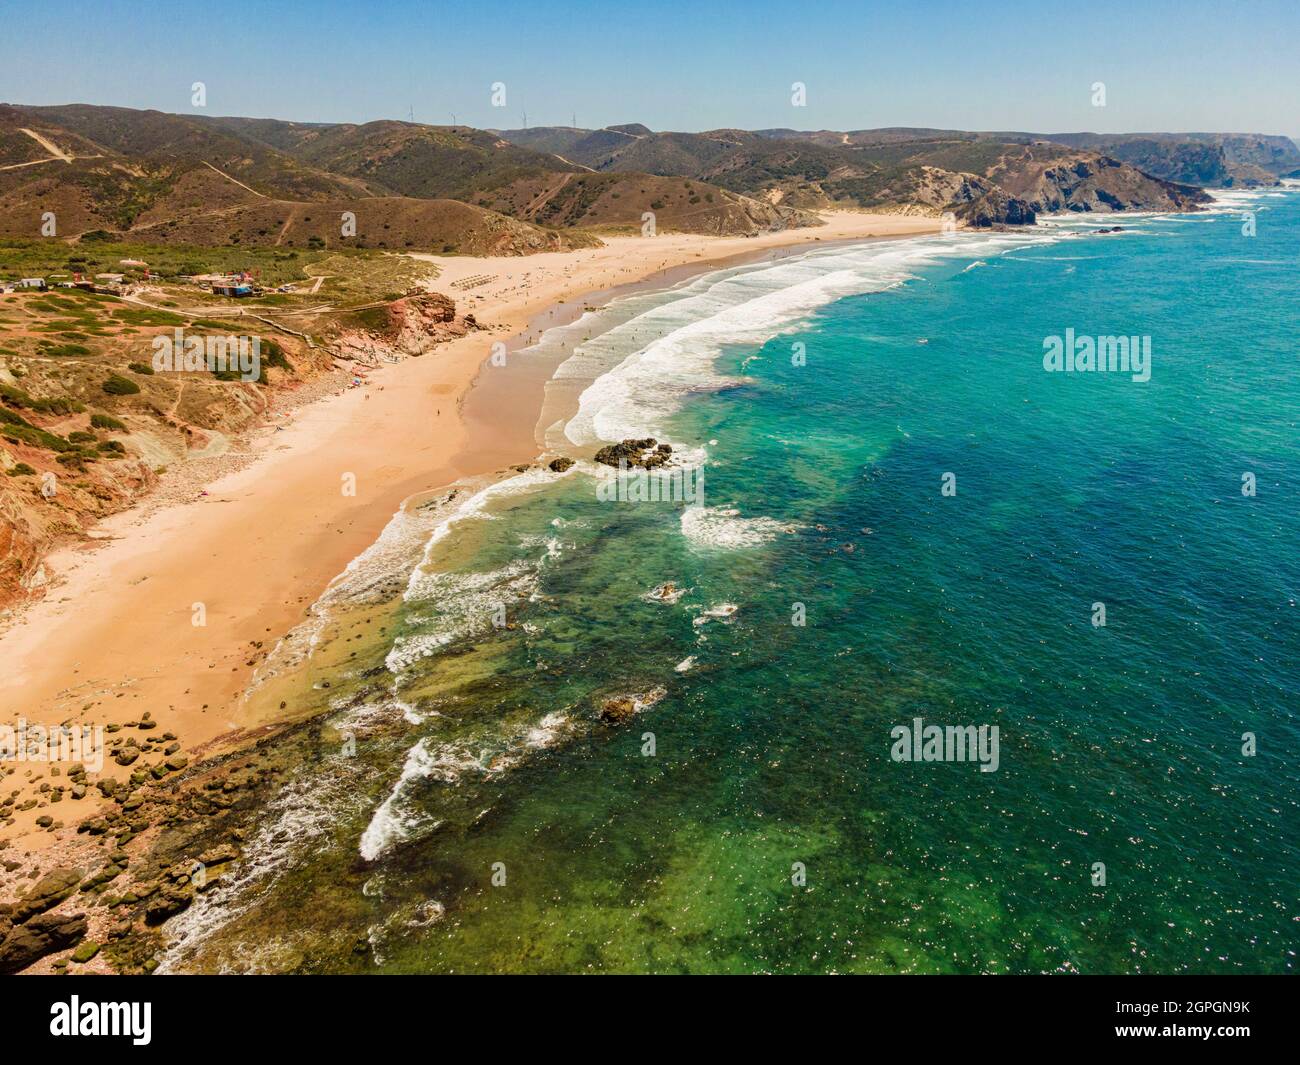 Portugal, Algarve, côte ouest de l'Atlantique, plage Praia do Amado Surfers (vue aérienne) Banque D'Images